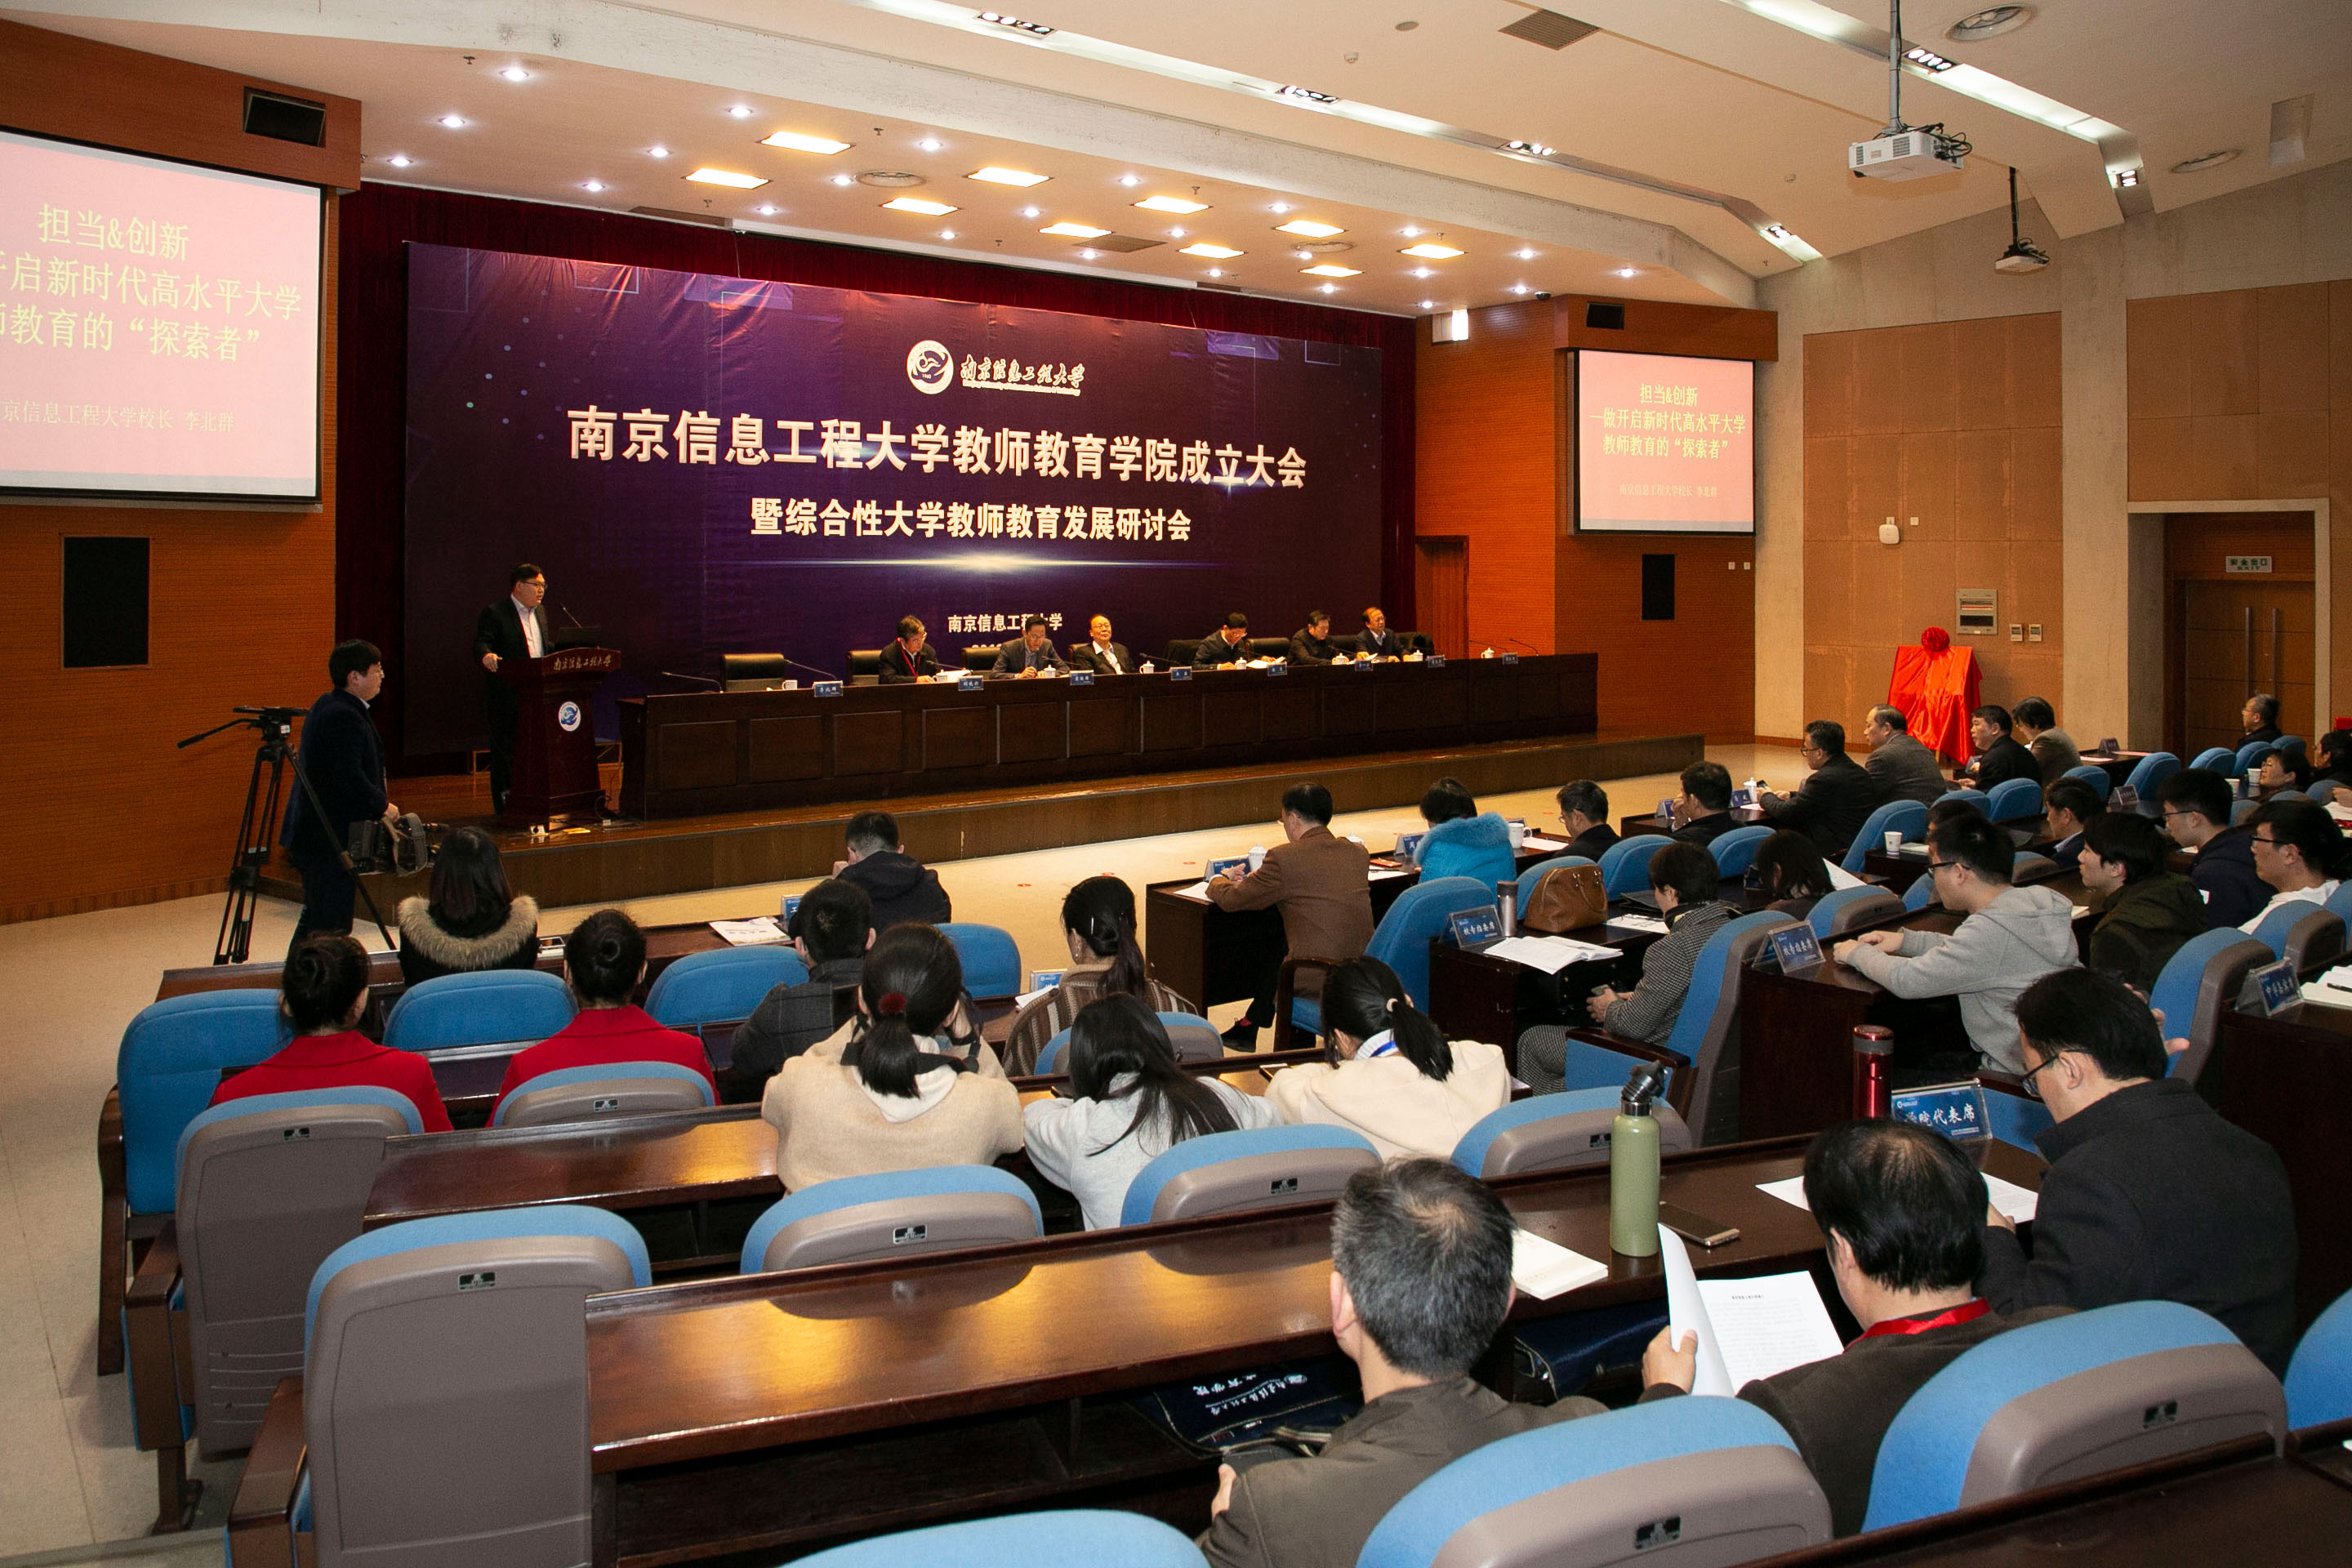 南京信息工程大学教师教育学院成立大会暨综合性大学教师教育发展研讨会在南京举行